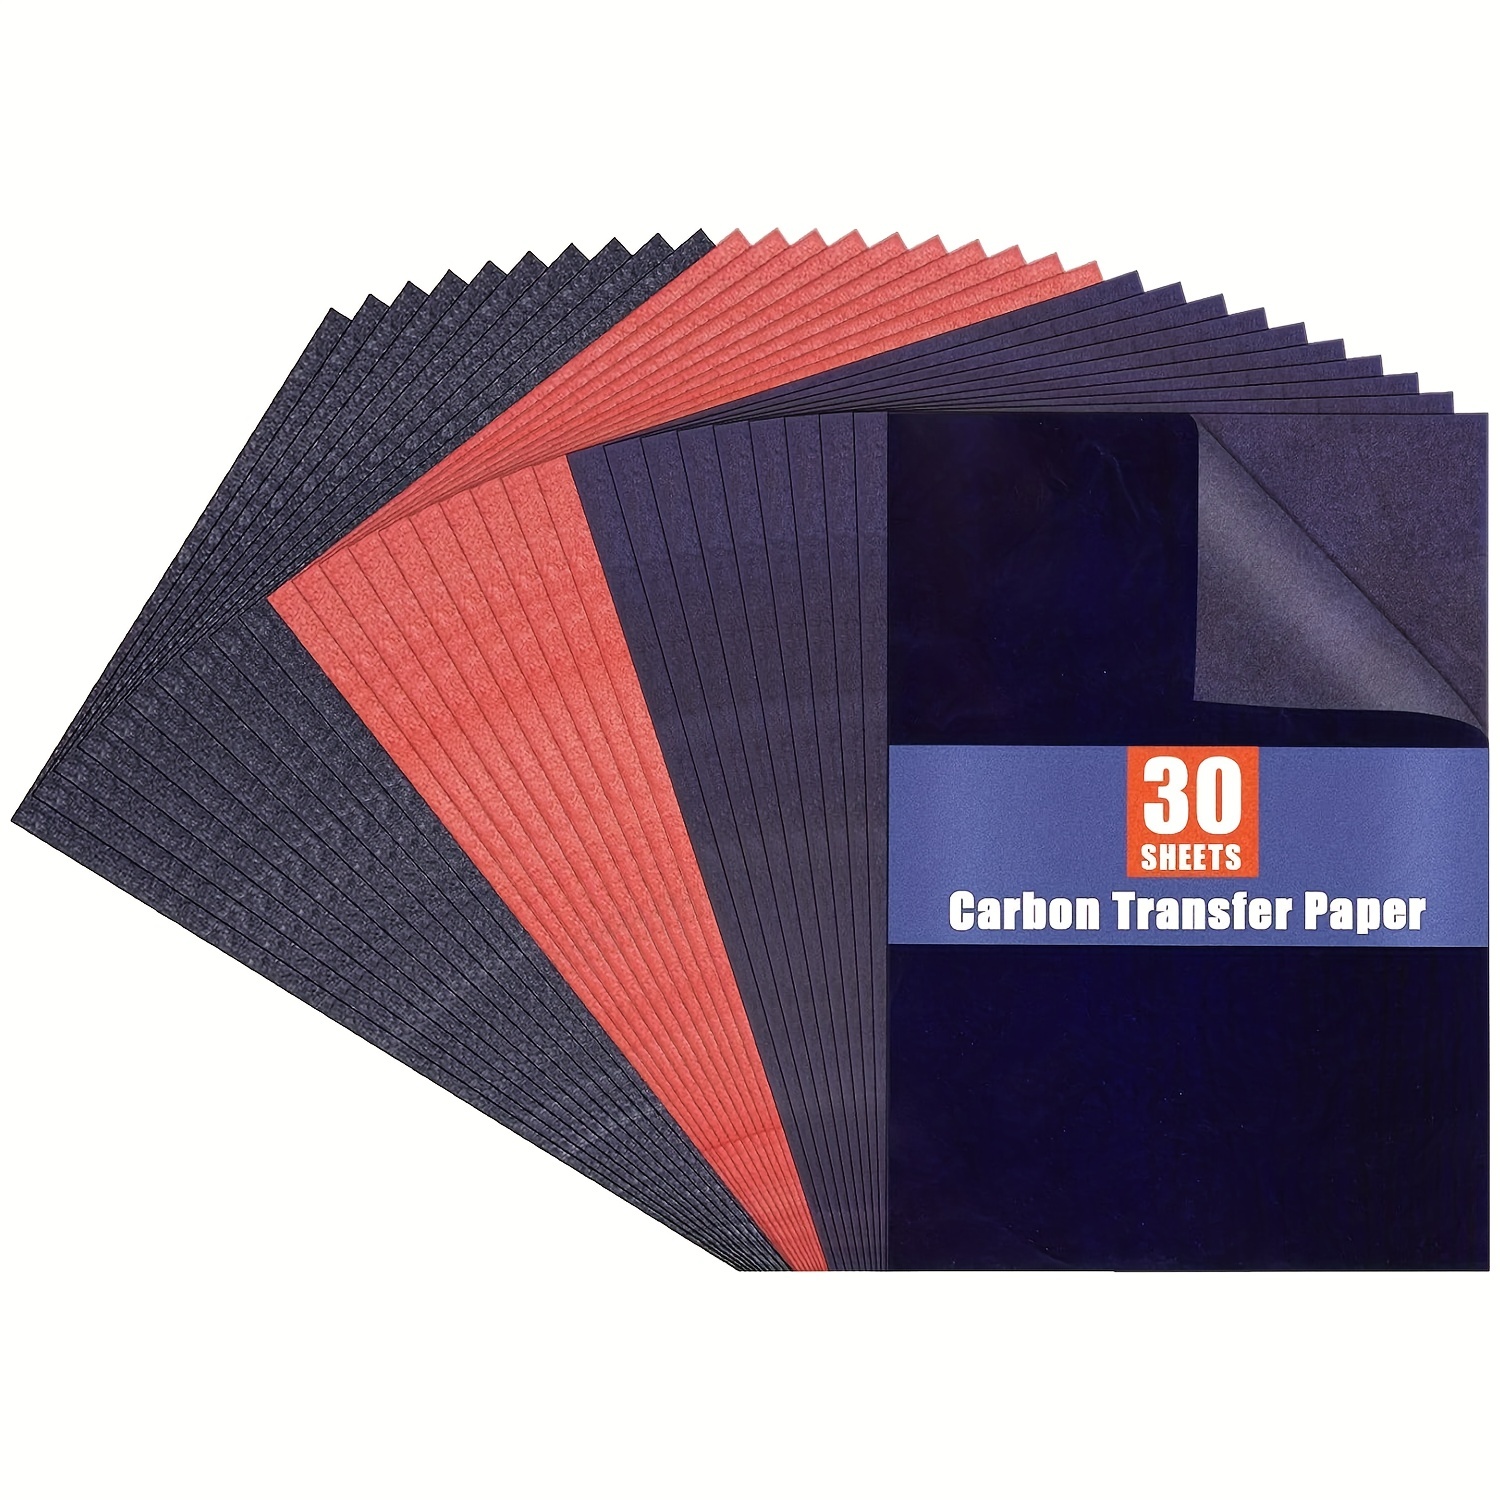 5 hojas de papel de transferencia de carbón pulgadas de papel de calco Papel  de de grafito de carbón con lápiz de grabado en reli BLESIY tela de bordado